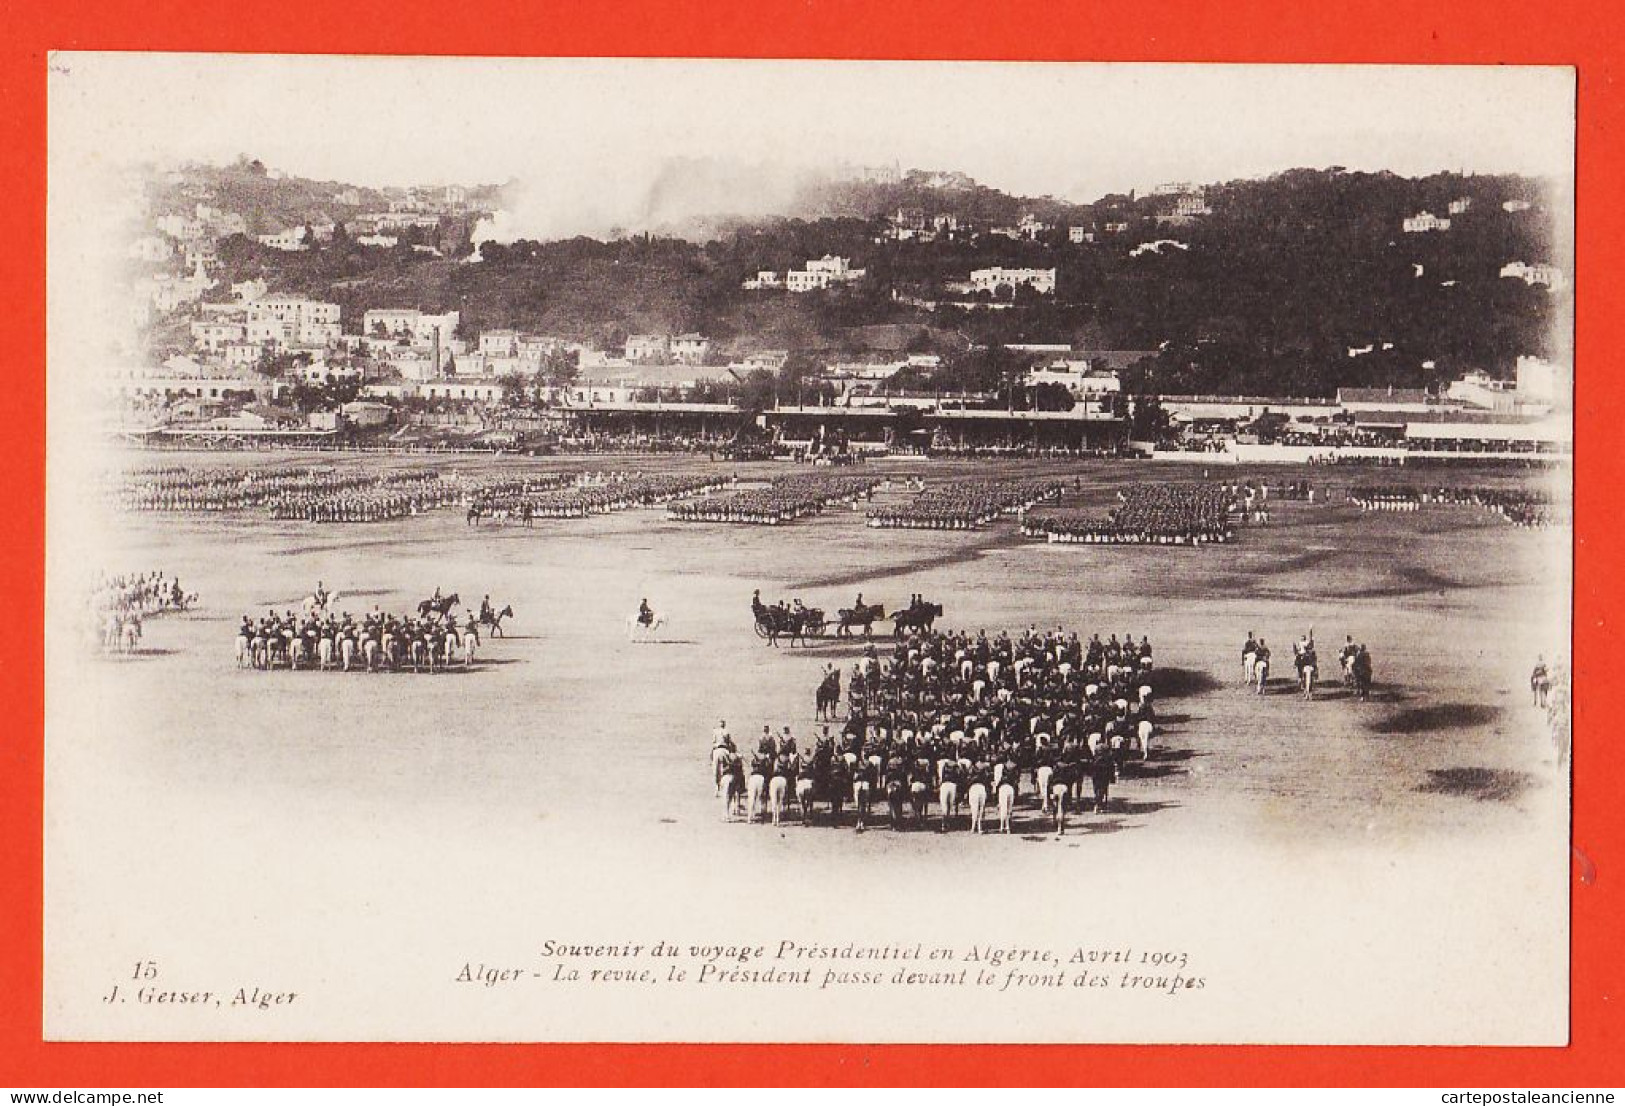 01742 / ALGER Algérie Souvenir Voyage Présidentiel LOUBET Avril 1903 Revue Président Passe Front Troupes GEISER - Algiers